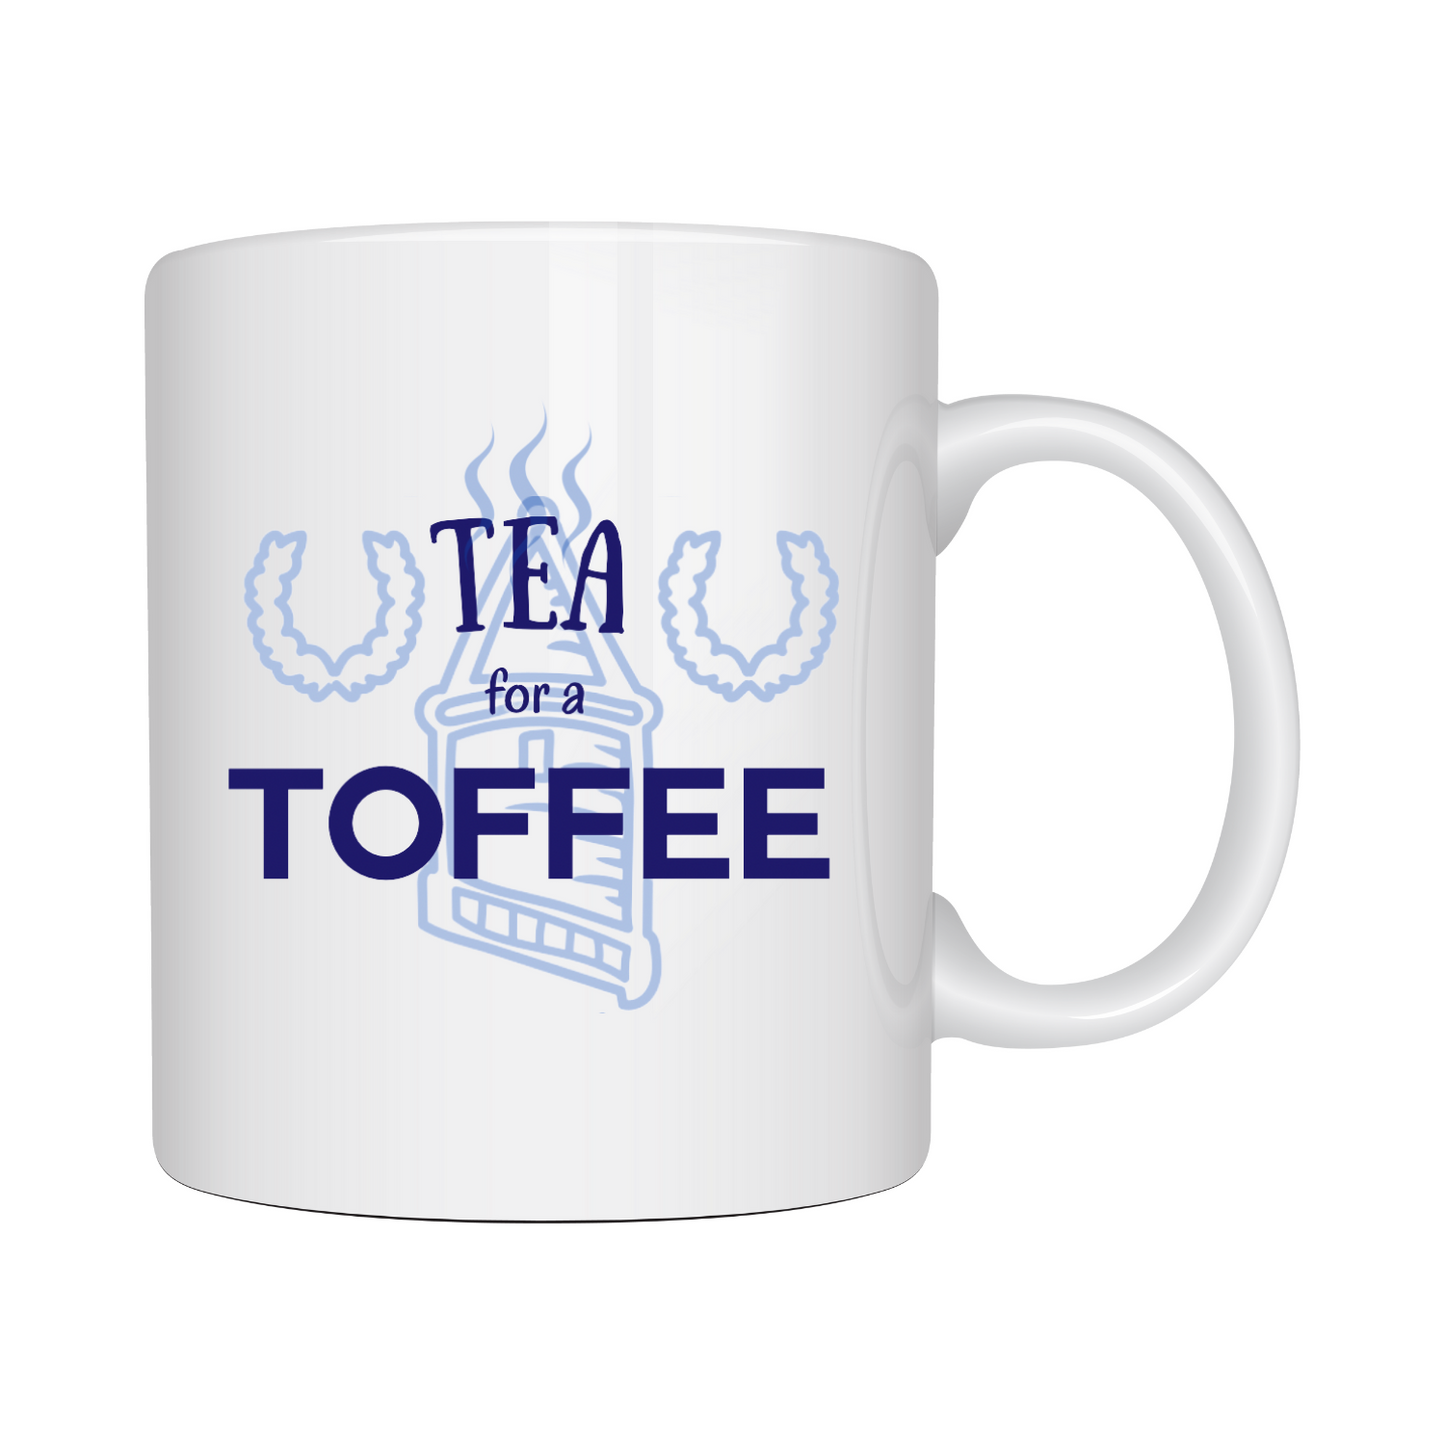 Tea For A Toffee Mug